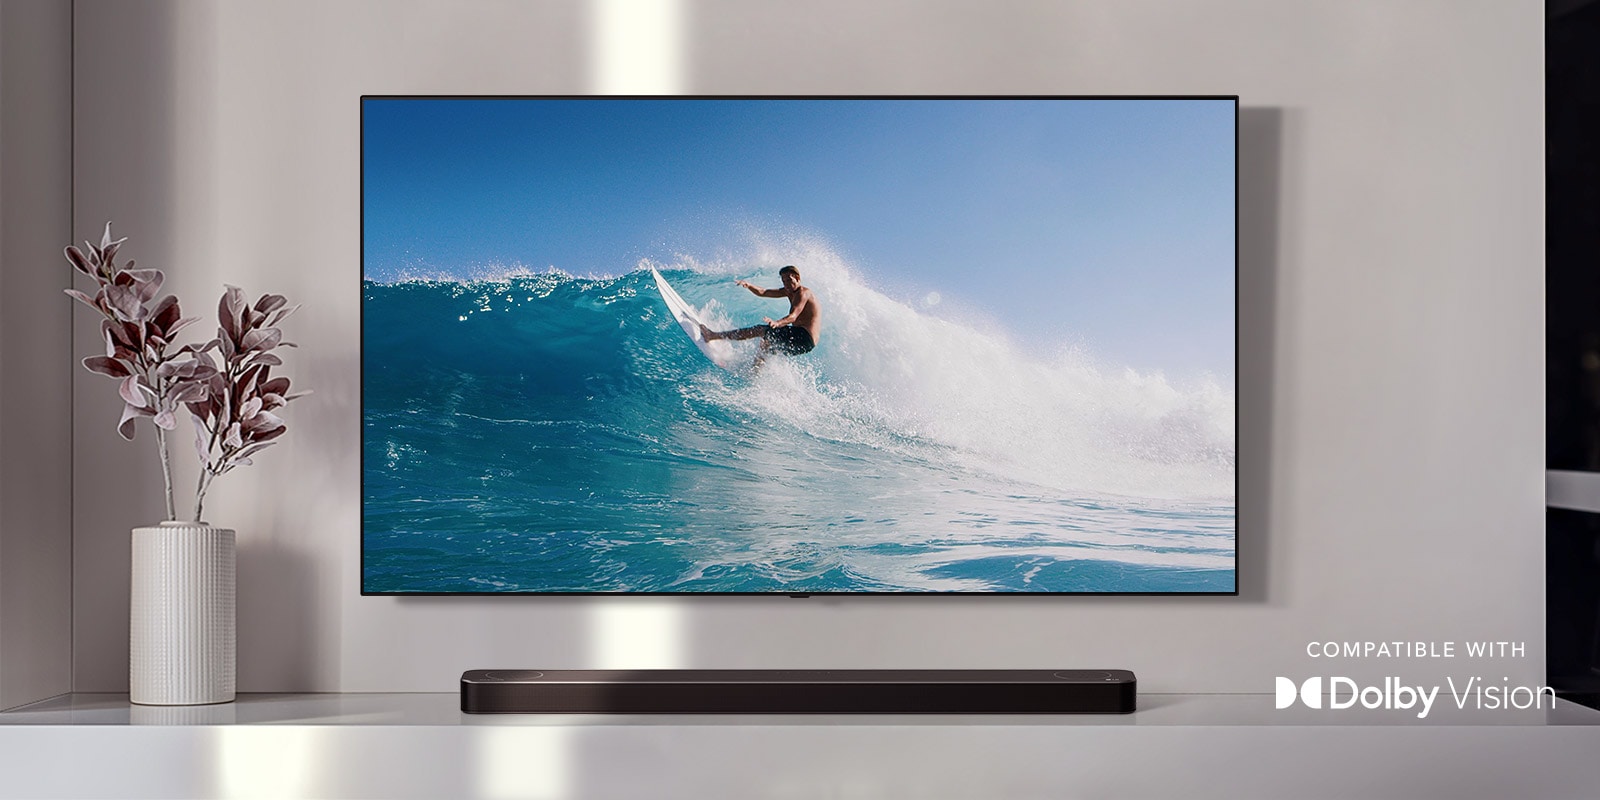 Telewizor zawieszony na ścianie. Na ekranie telewizora mężczyzna surfuje na ogromnej fali. Soundbar LG znajduje się bezpośrednio pod telewizorem, na białej półce. Tuż obok soundbara znajduje się flakon z kwiatkiem (odtwarzanie materiału wideo) 